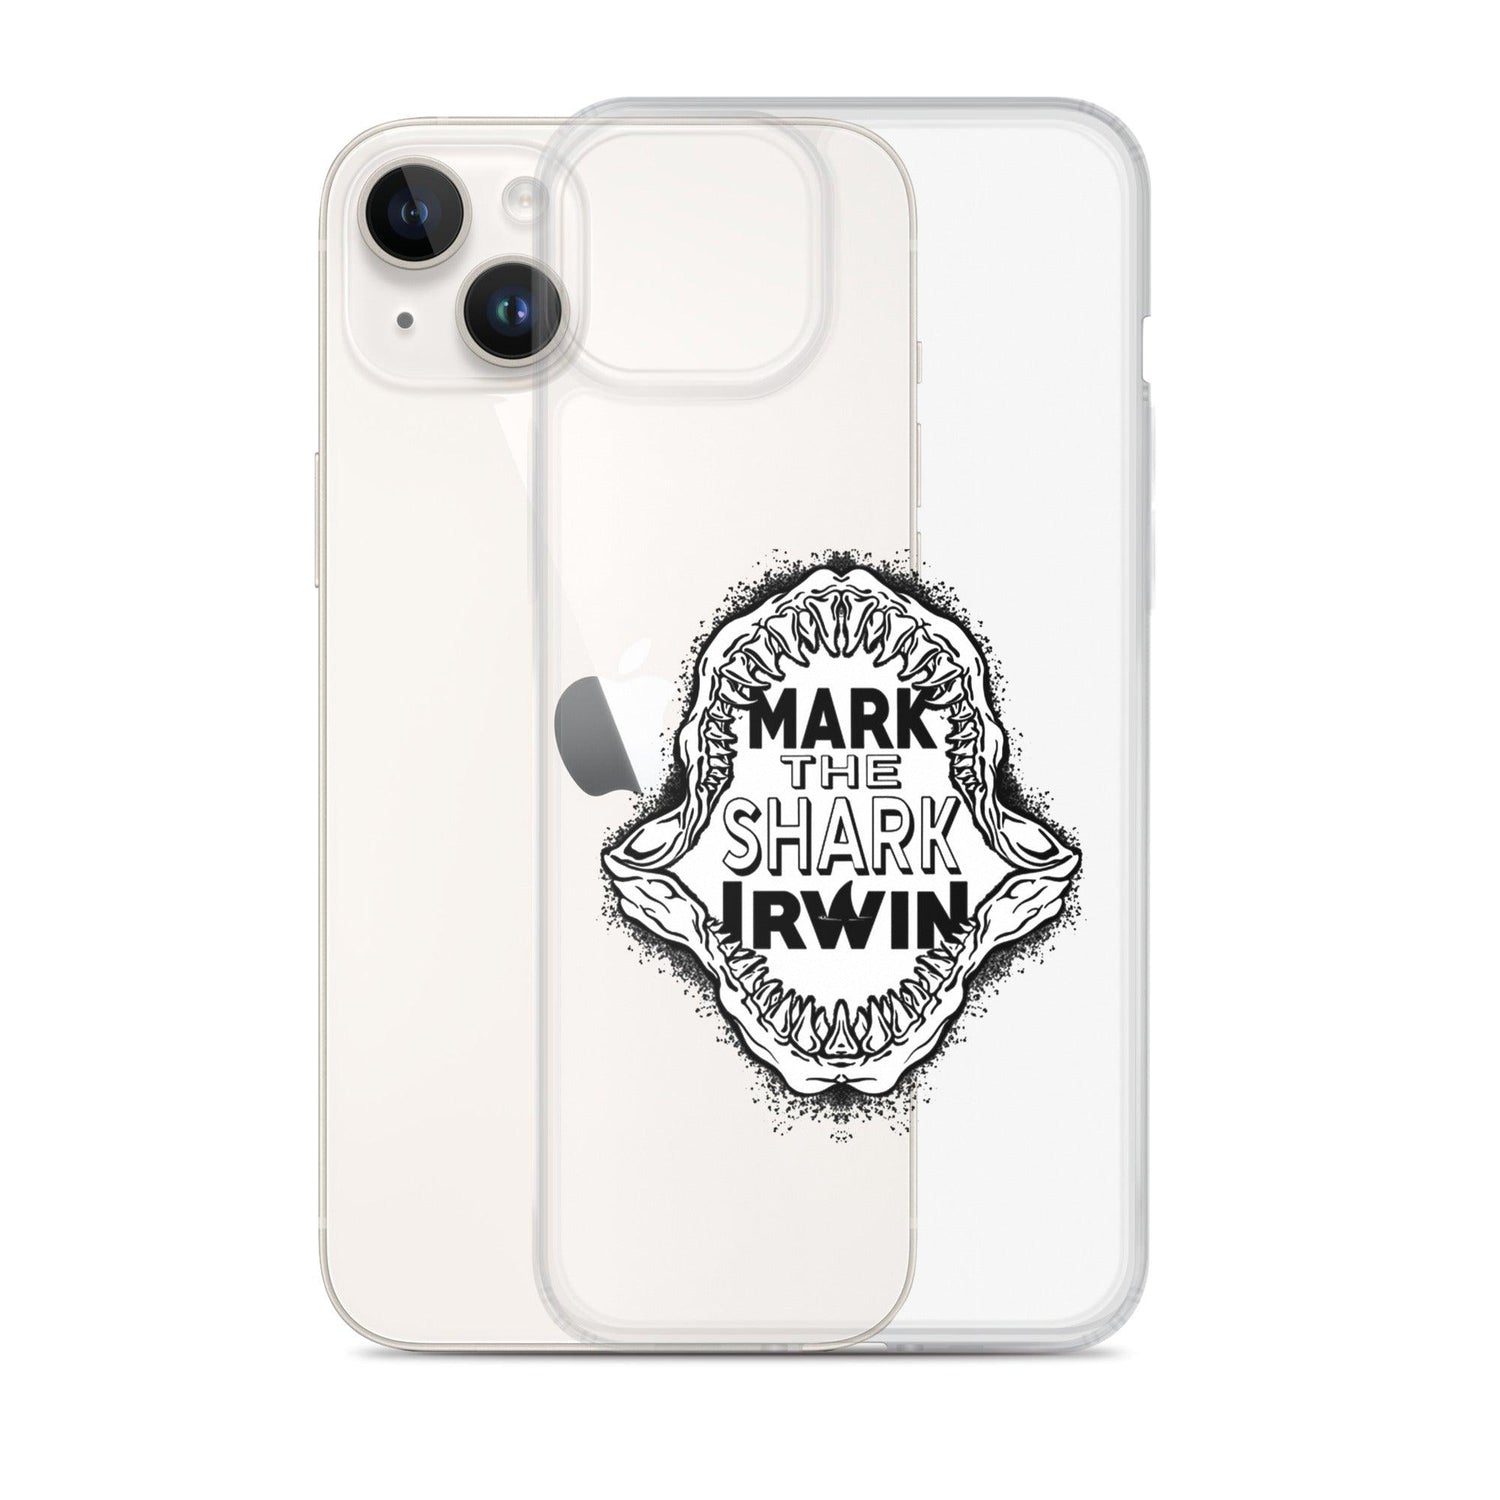 Mark Irwin "The Shark" iPhone® - Fan Arch